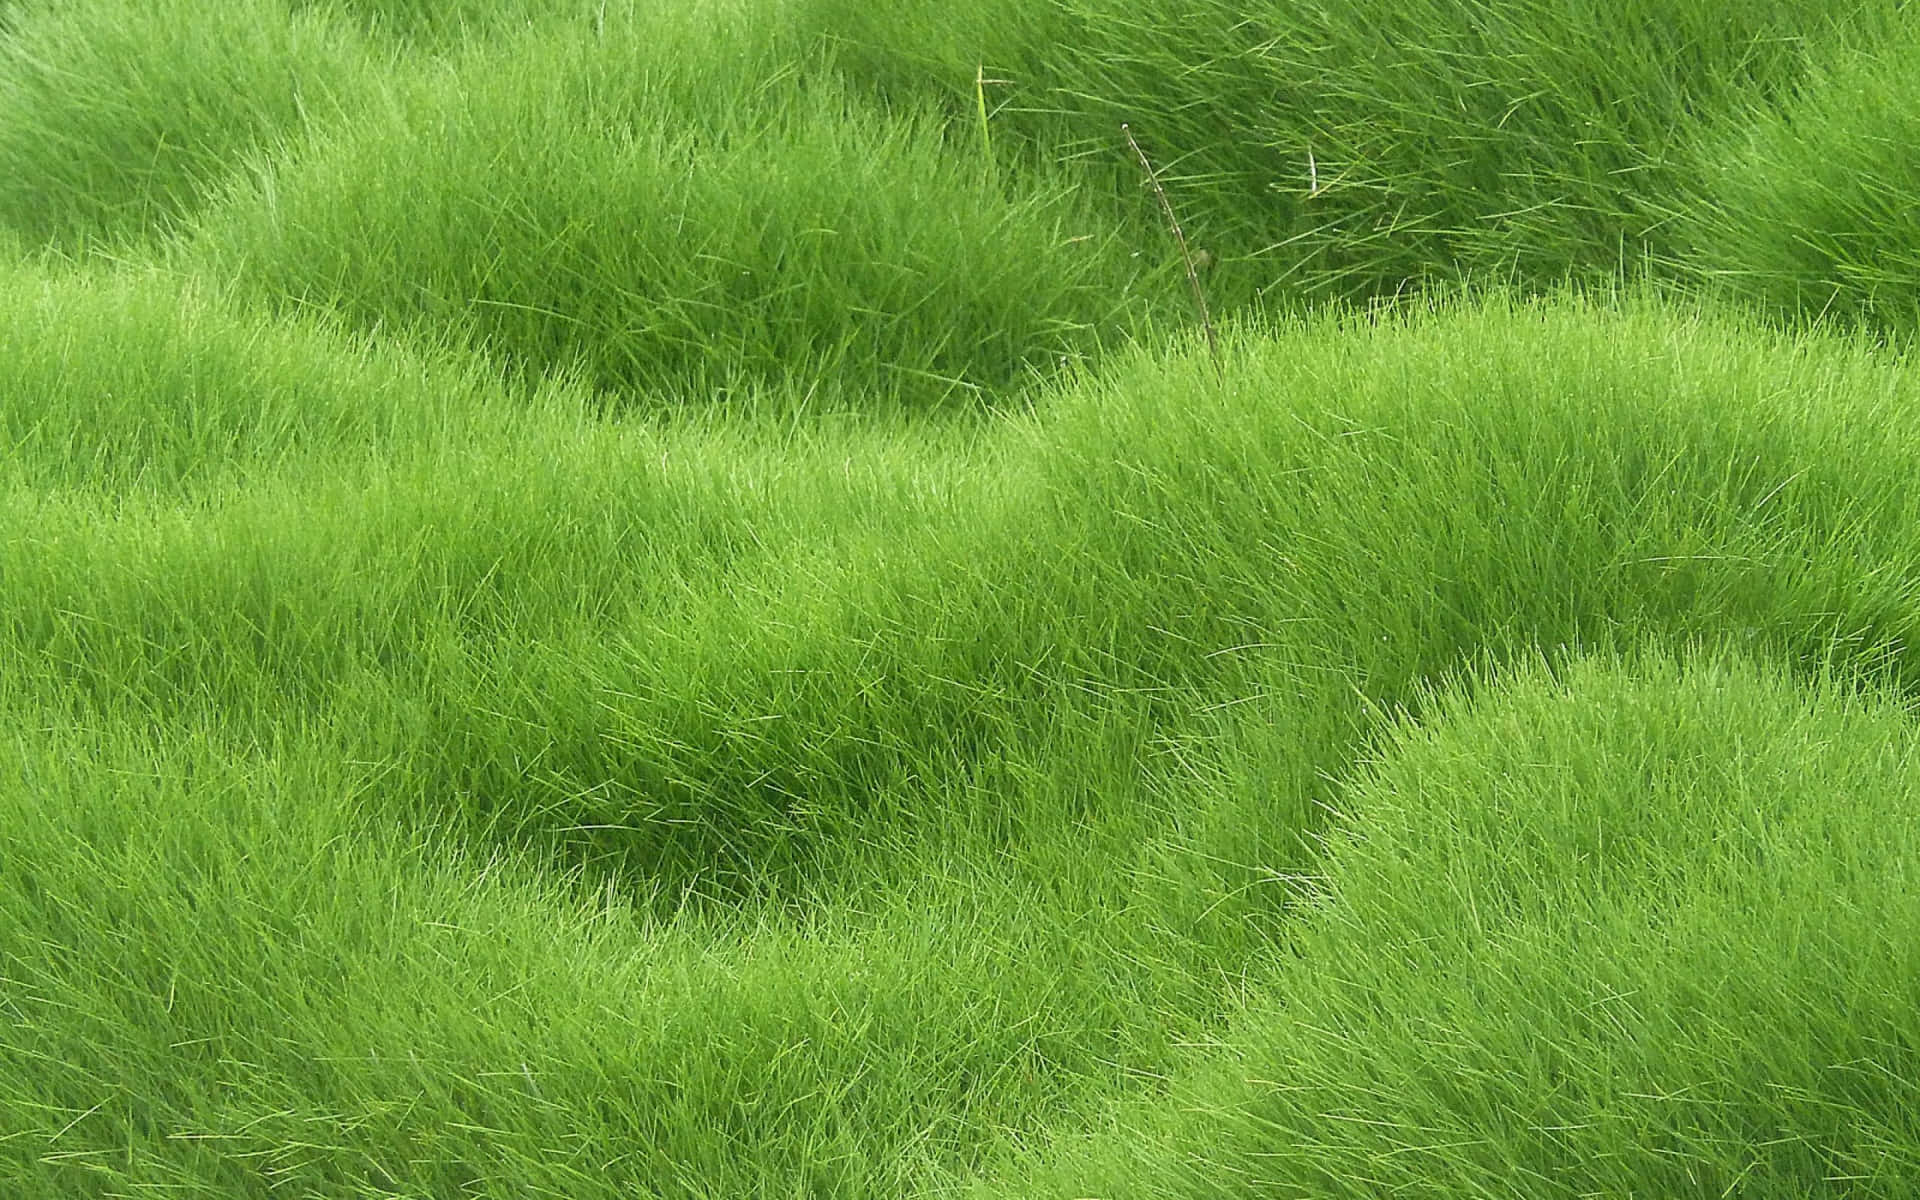 Vibrant Green Grass Texture